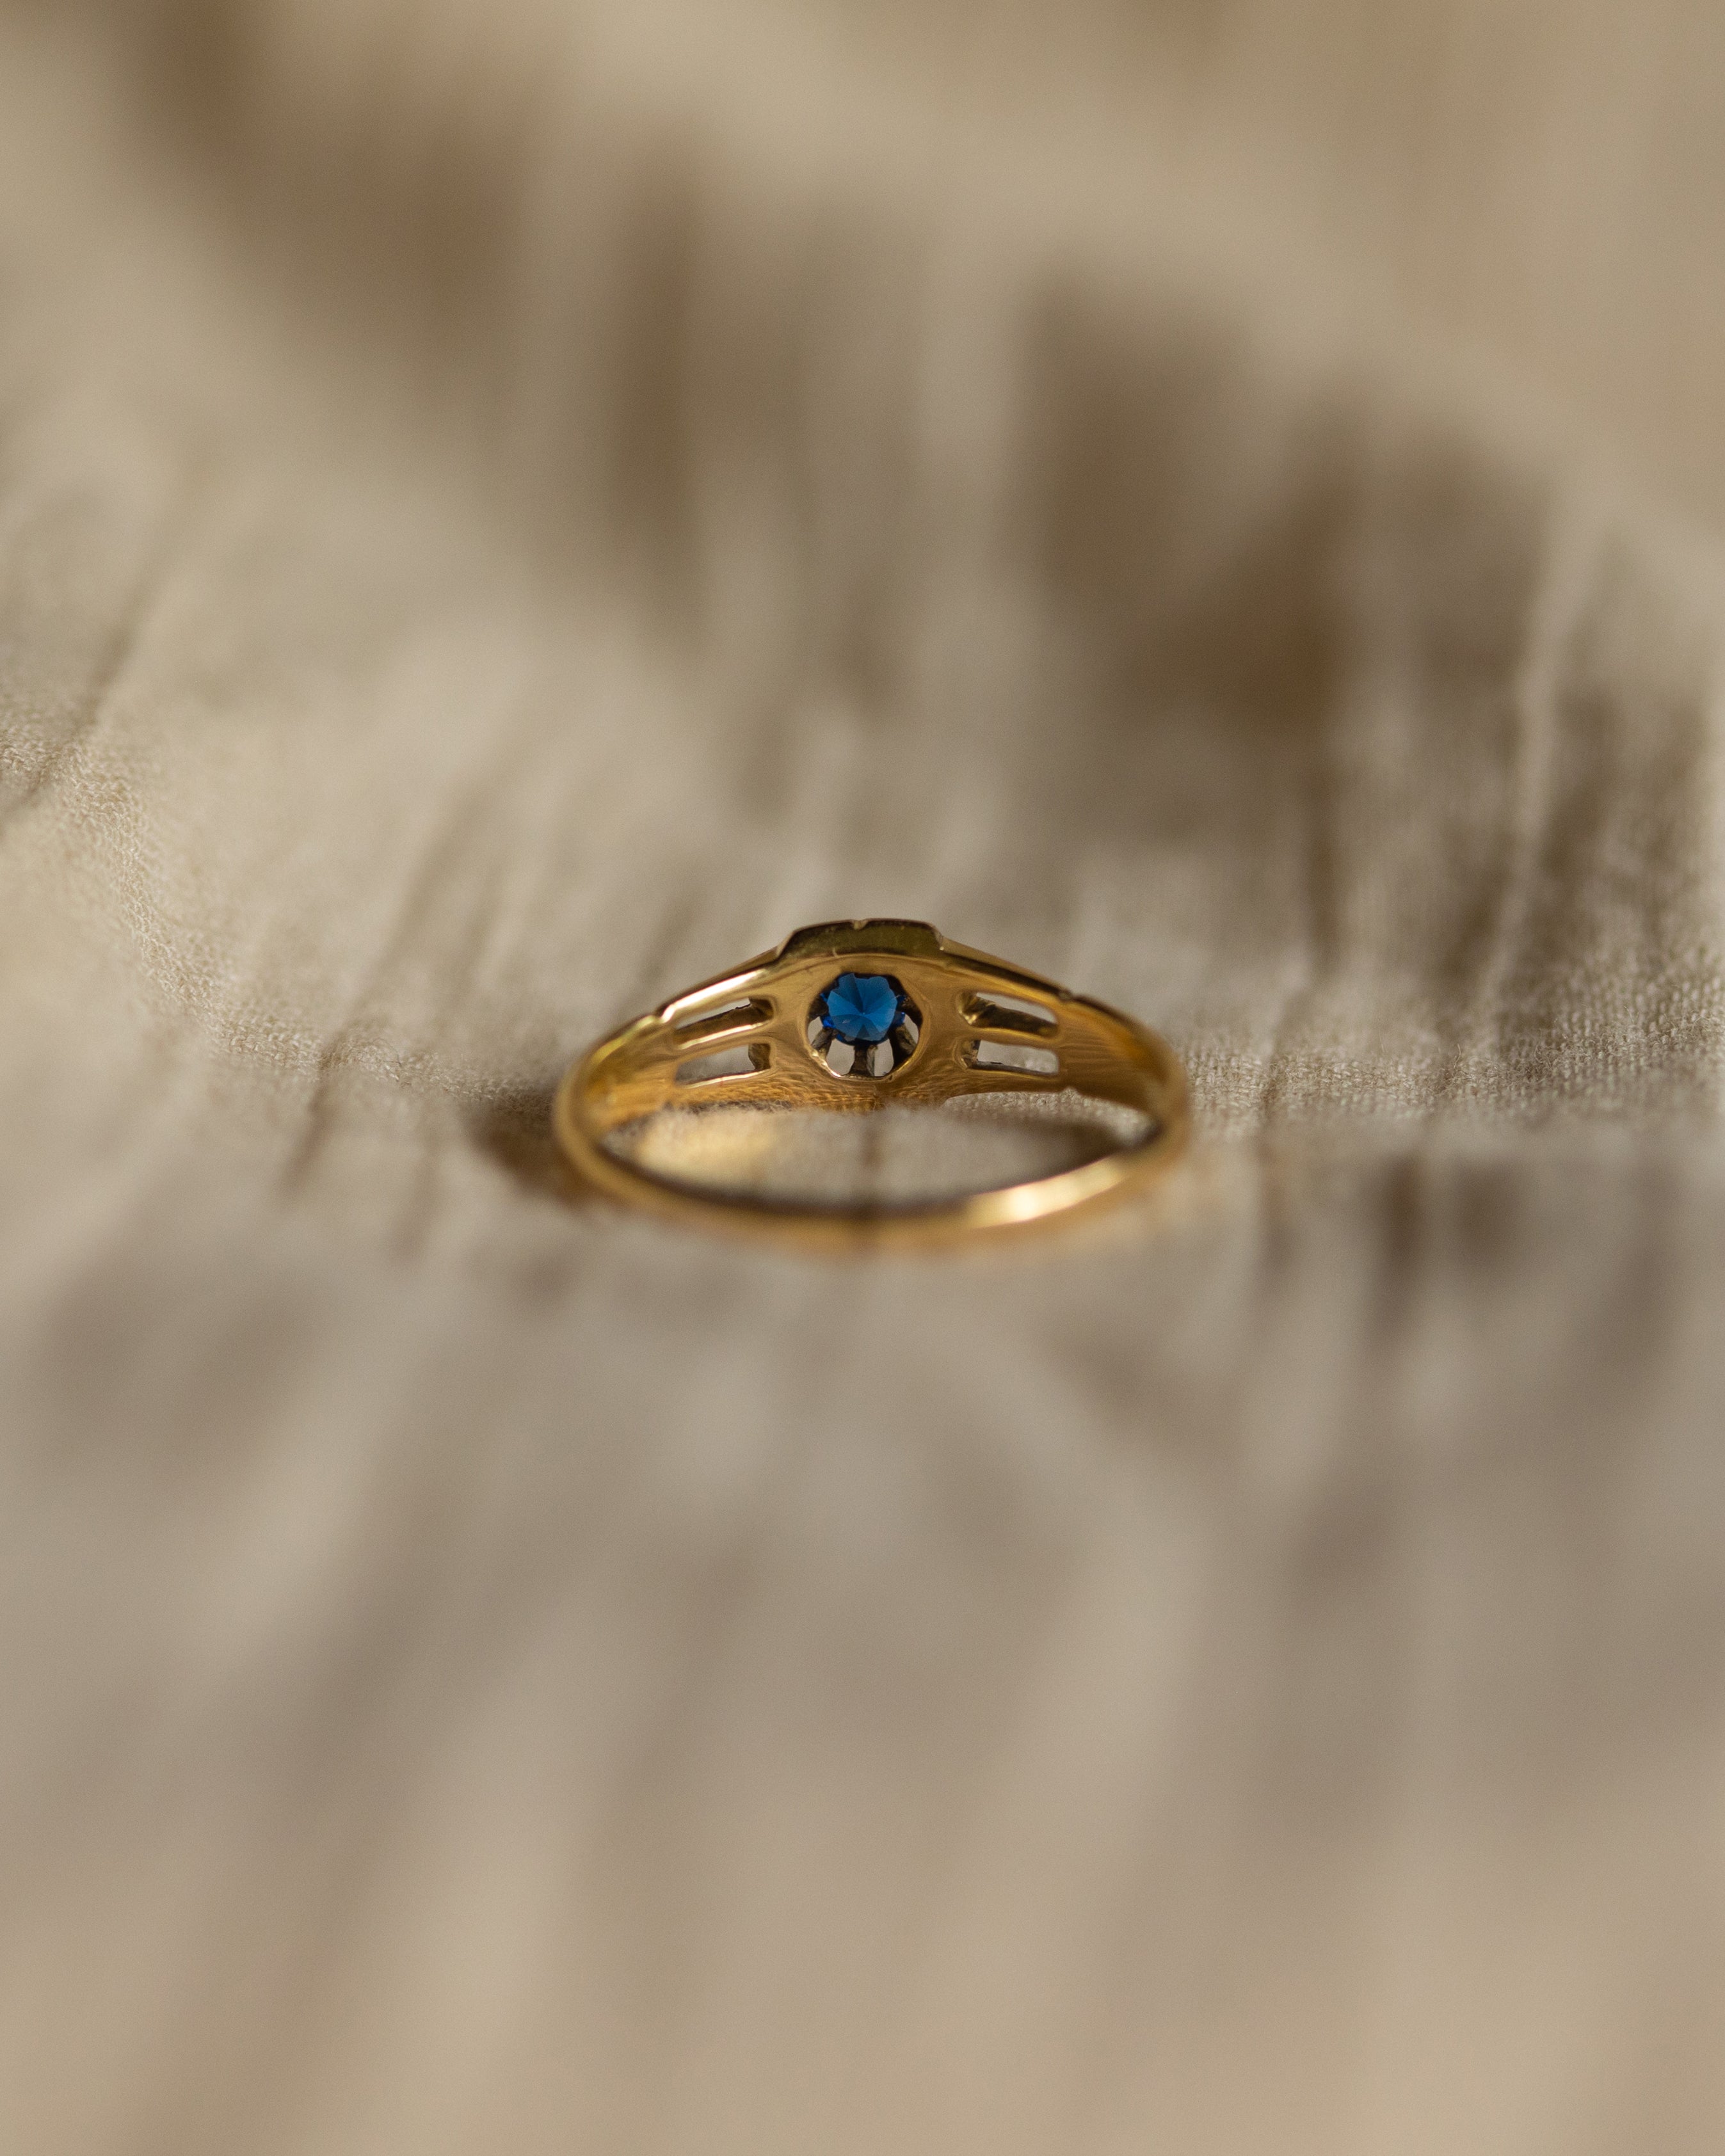 Lottie 1910 Antique 18ct Gold Blue Paste Solitaire Ring